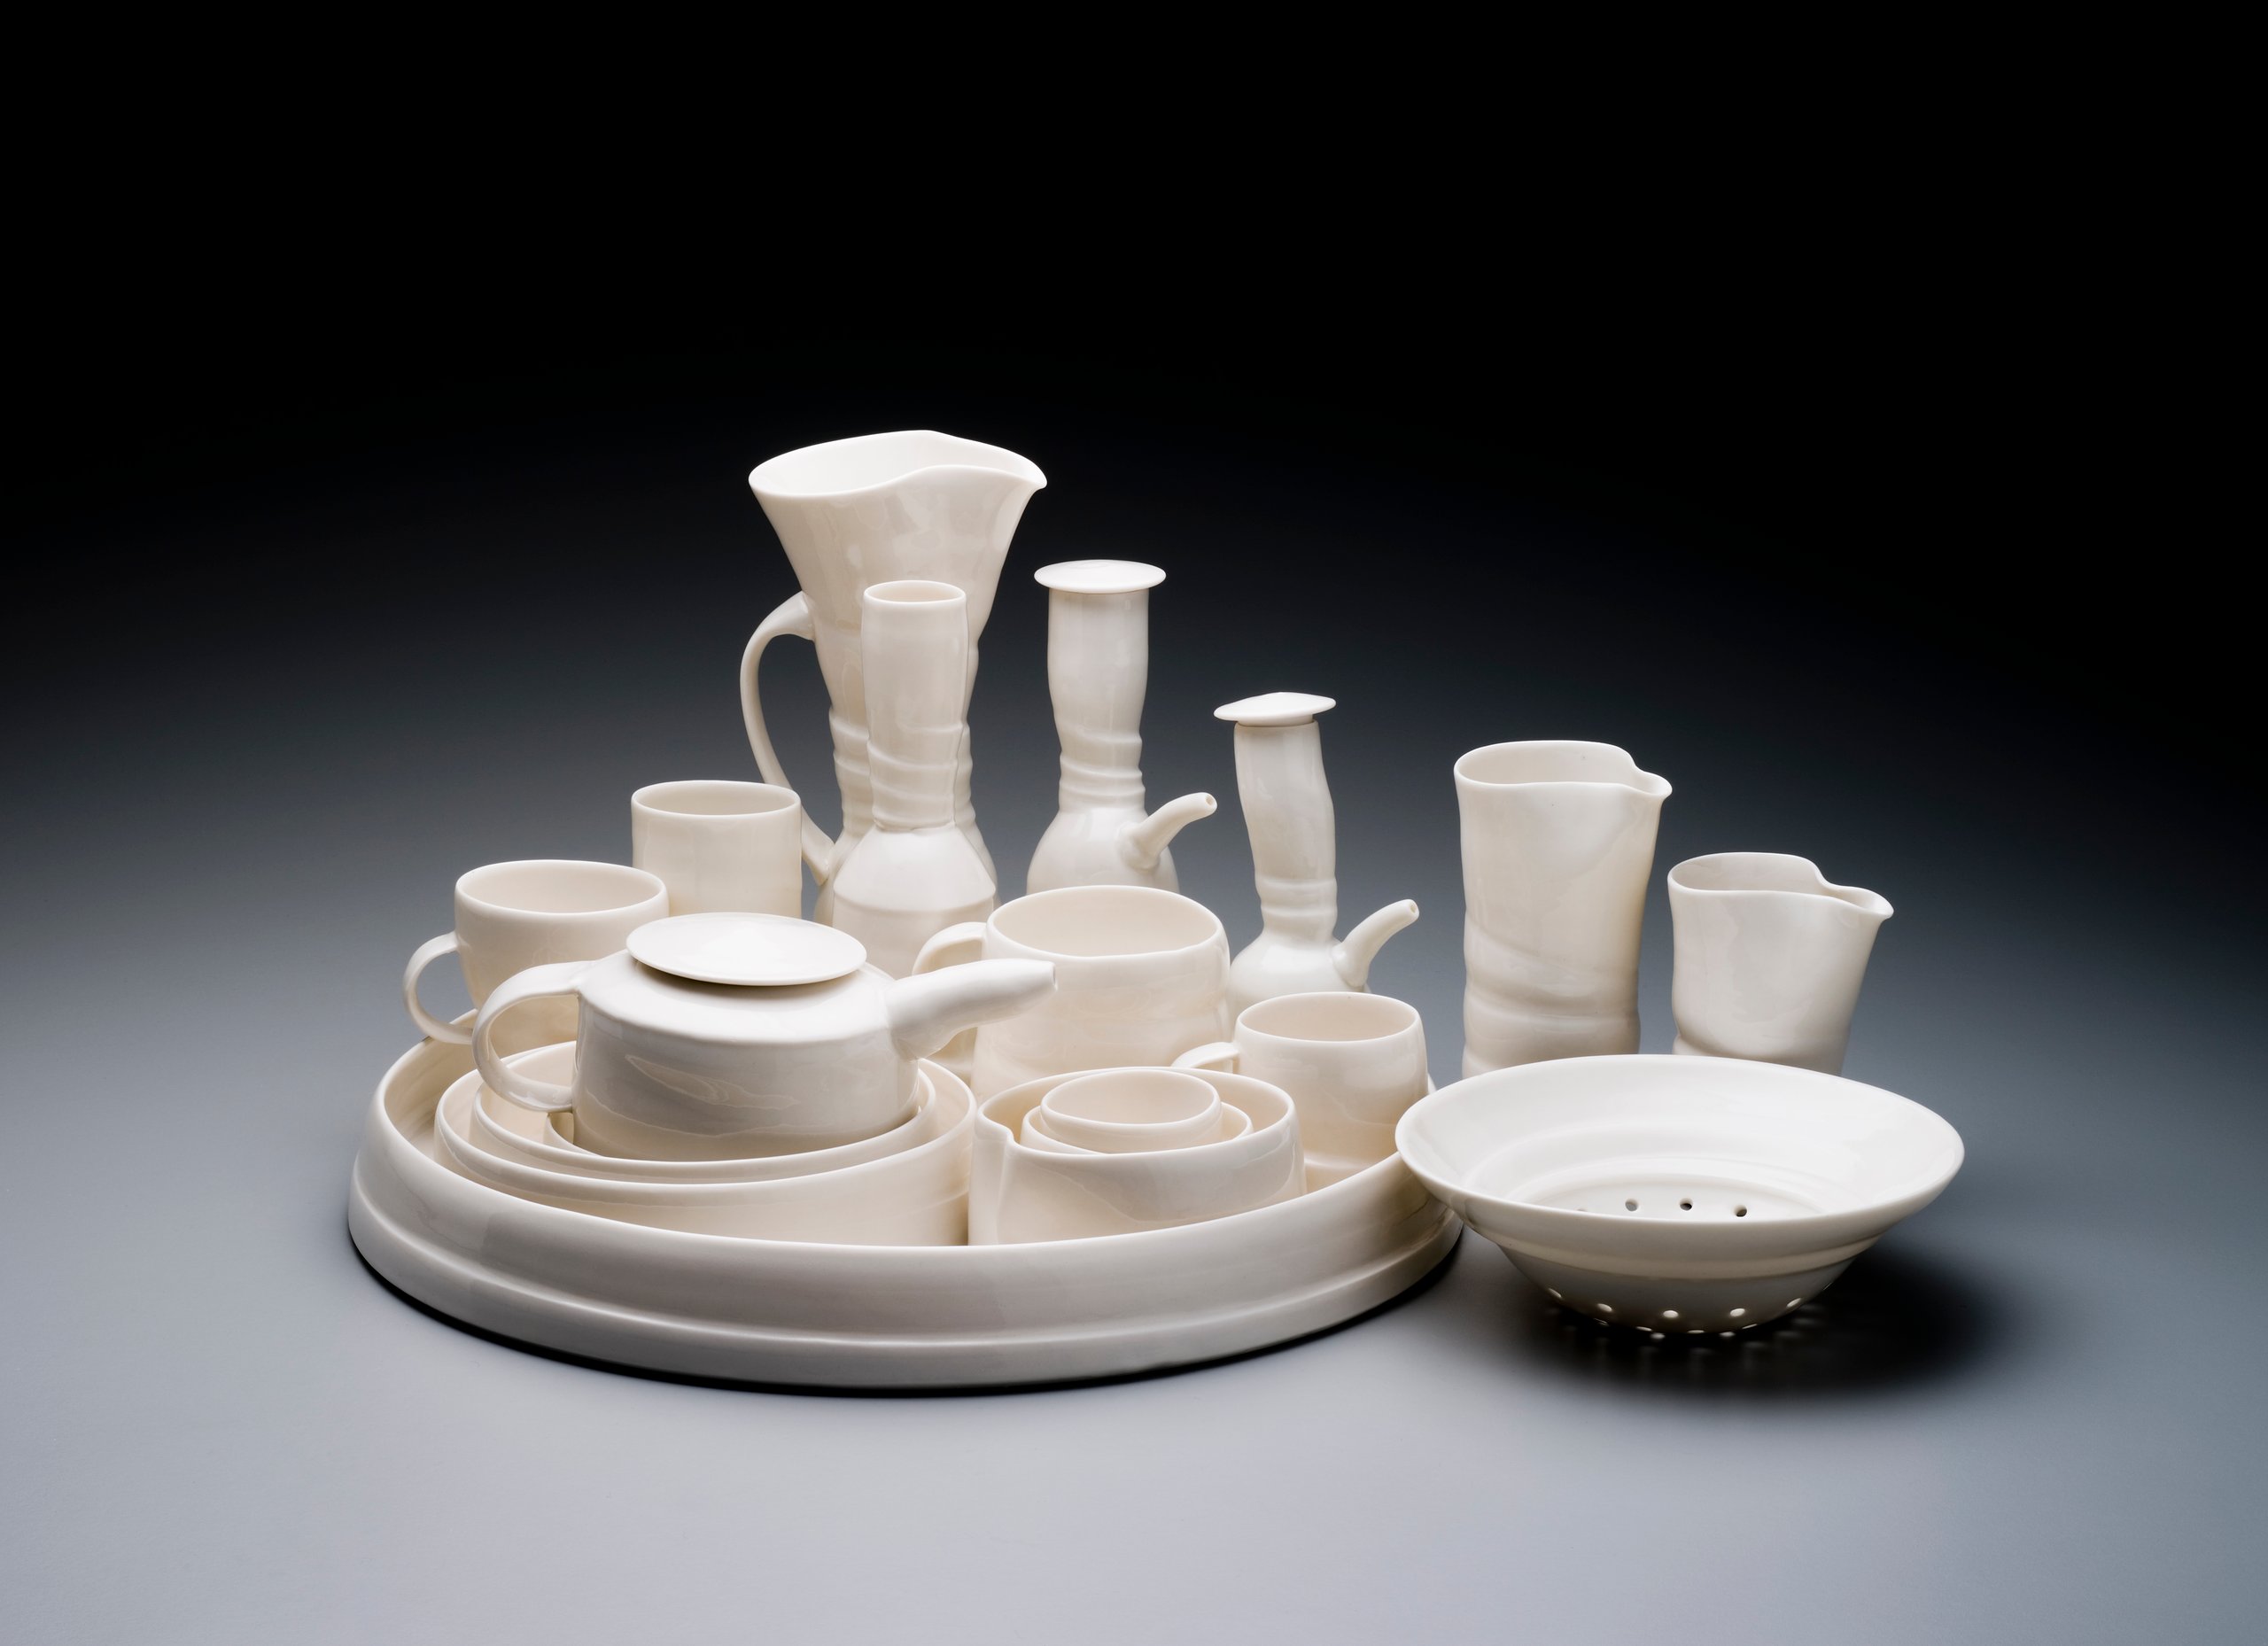 'Leaving Home' ceramic series by Janet DeBoos